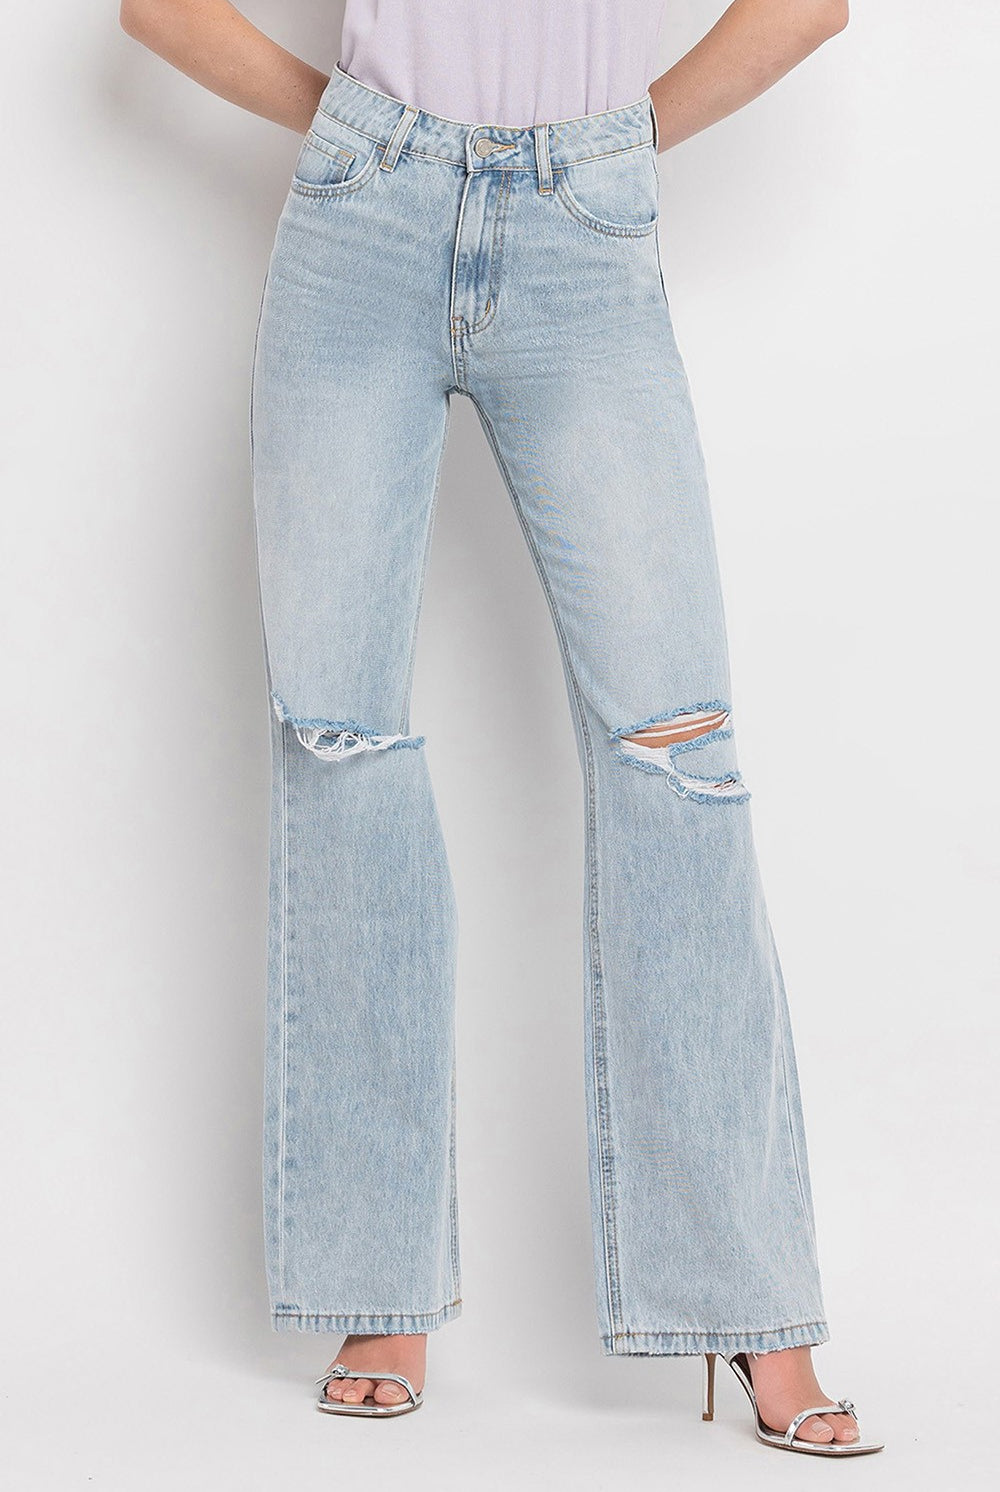 Light Gray Vervet by Flying Monkey 90'S Vintage Super High Rise Flare Jeans Denim